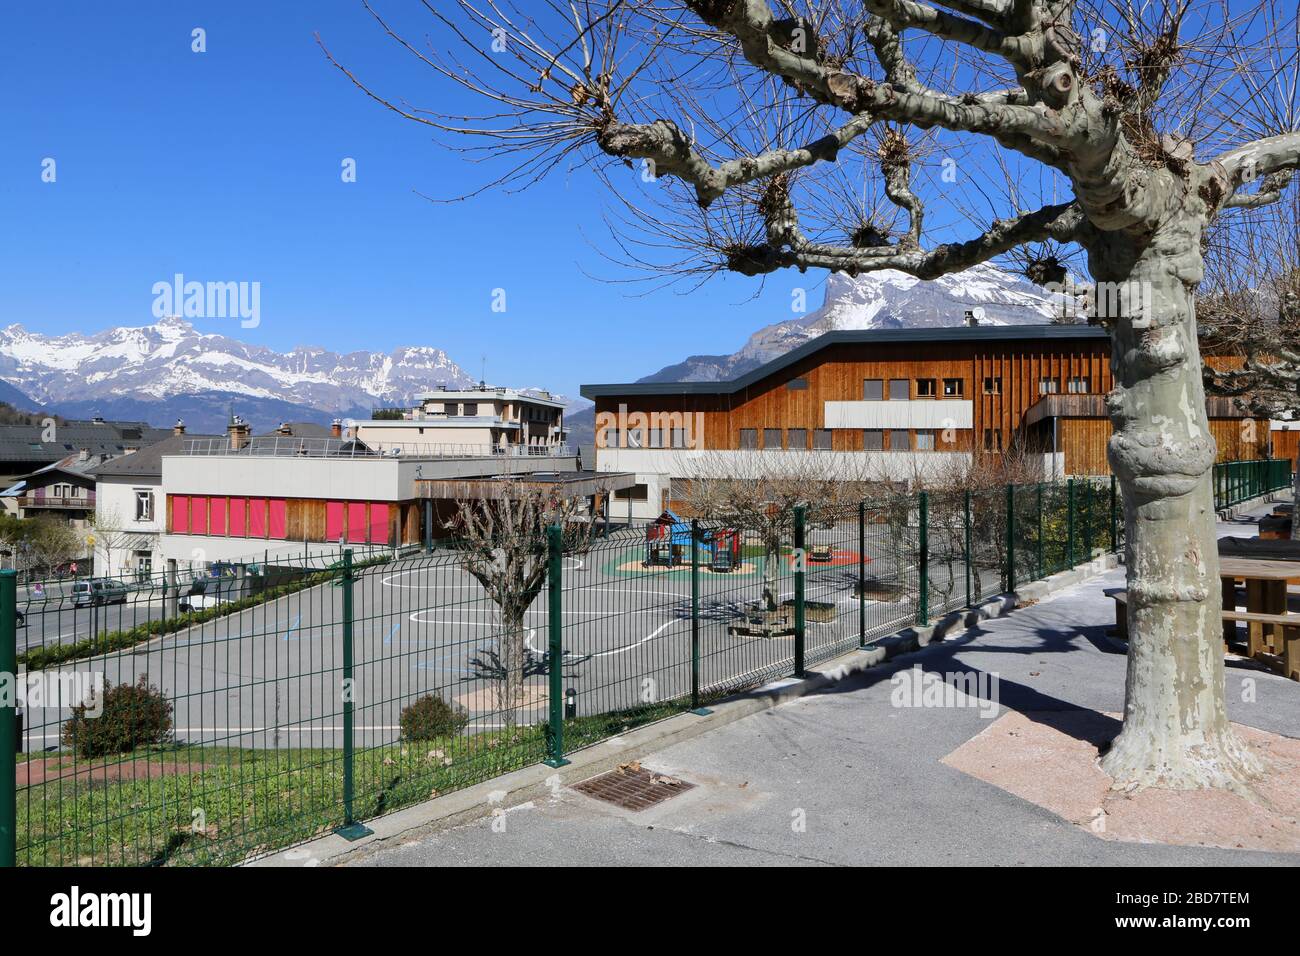 Groupe scolaire Marie Paradis. Saint-Gervais-les-Bains. Haute-Savoie. France. Stock Photo